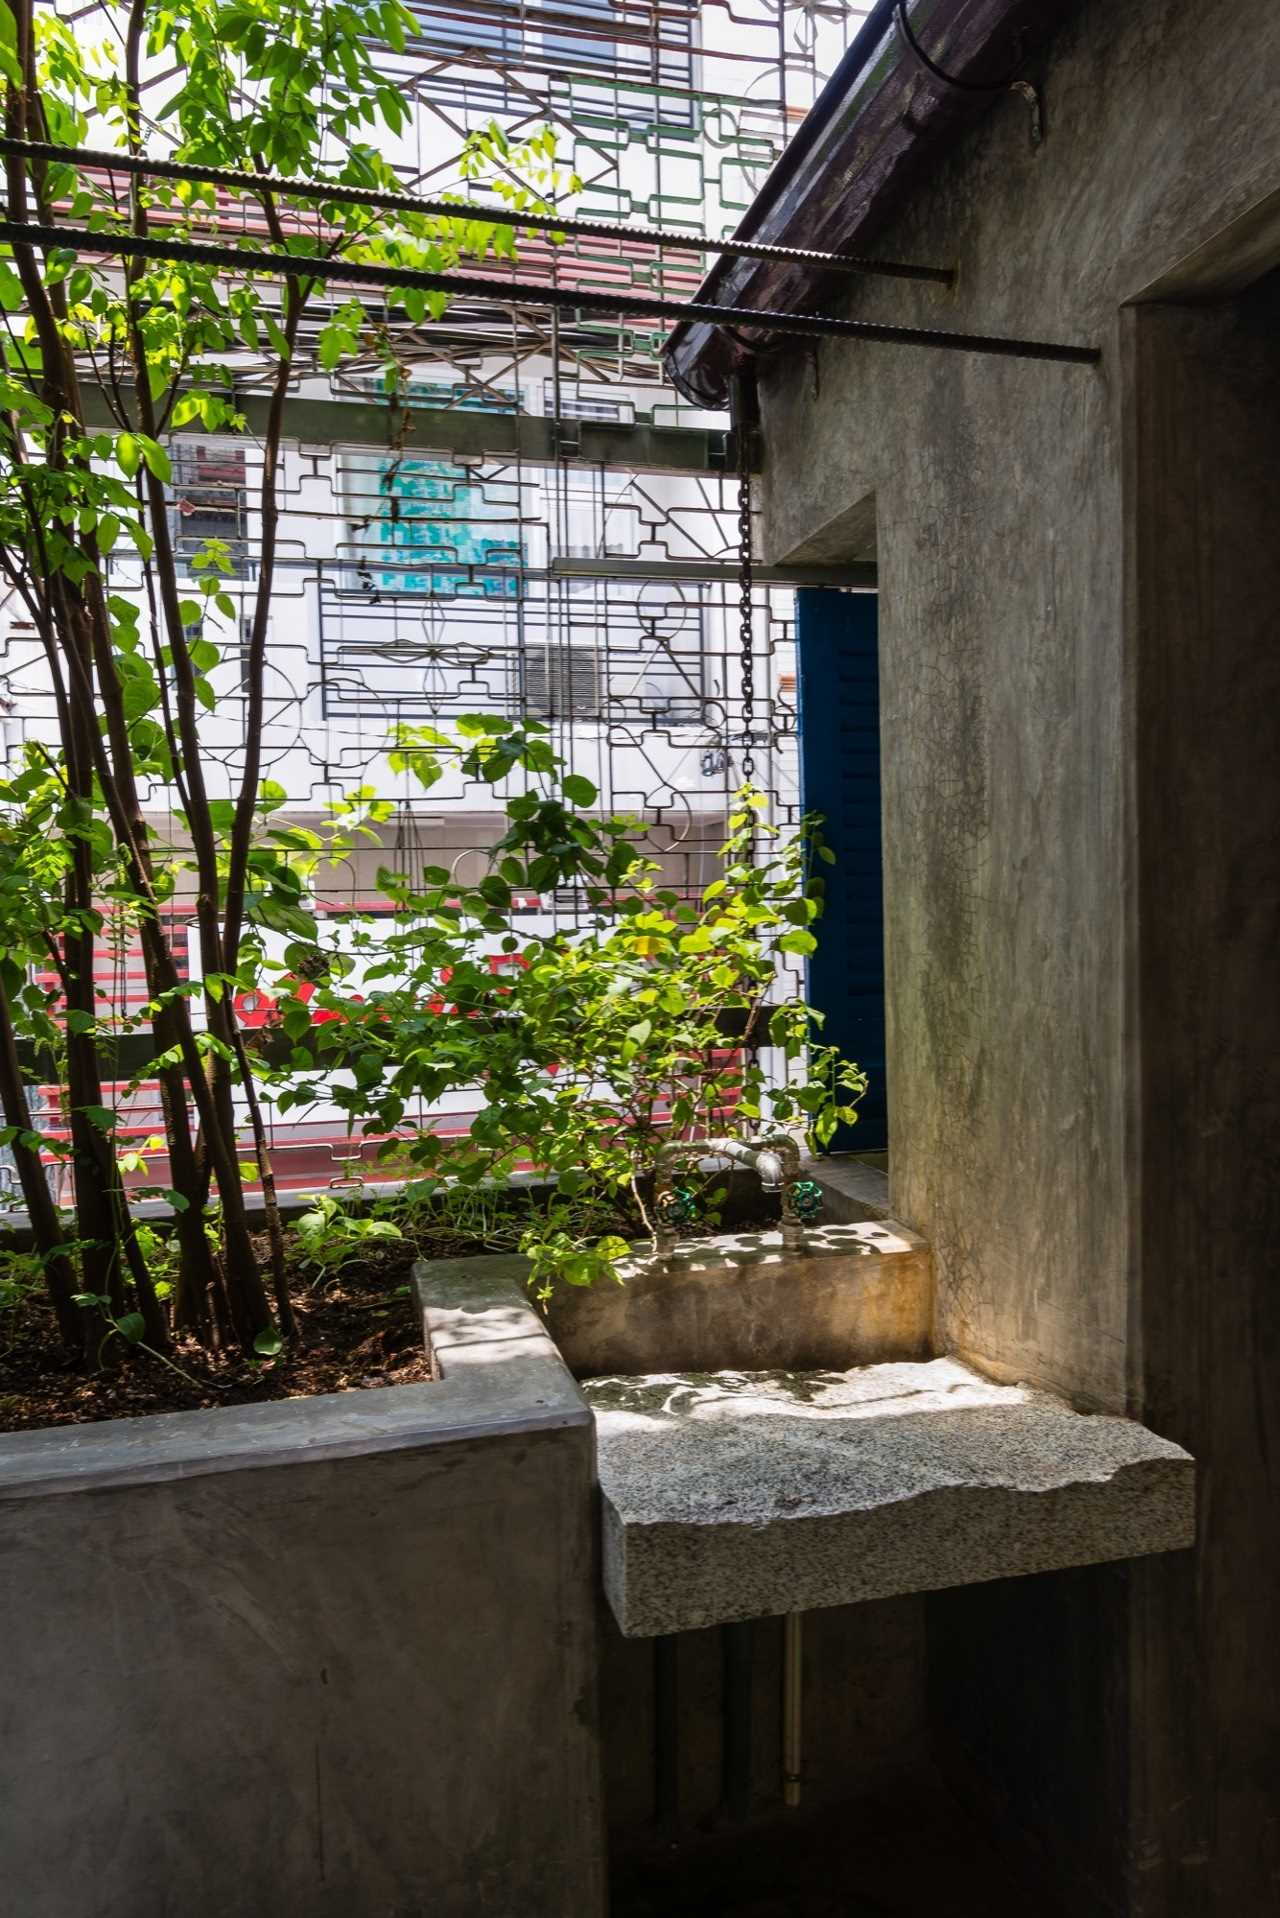 Сайгон-хаус или сотовый дом во Вьетнаме необычный, студия a21studioСвоей, носил, название, такое, именно, Сайгона, древнего, атмосферу, передать, попытались, архитекторы, работой, разработала, расположенный, House, Saigon, названием, Проект, Хошимине